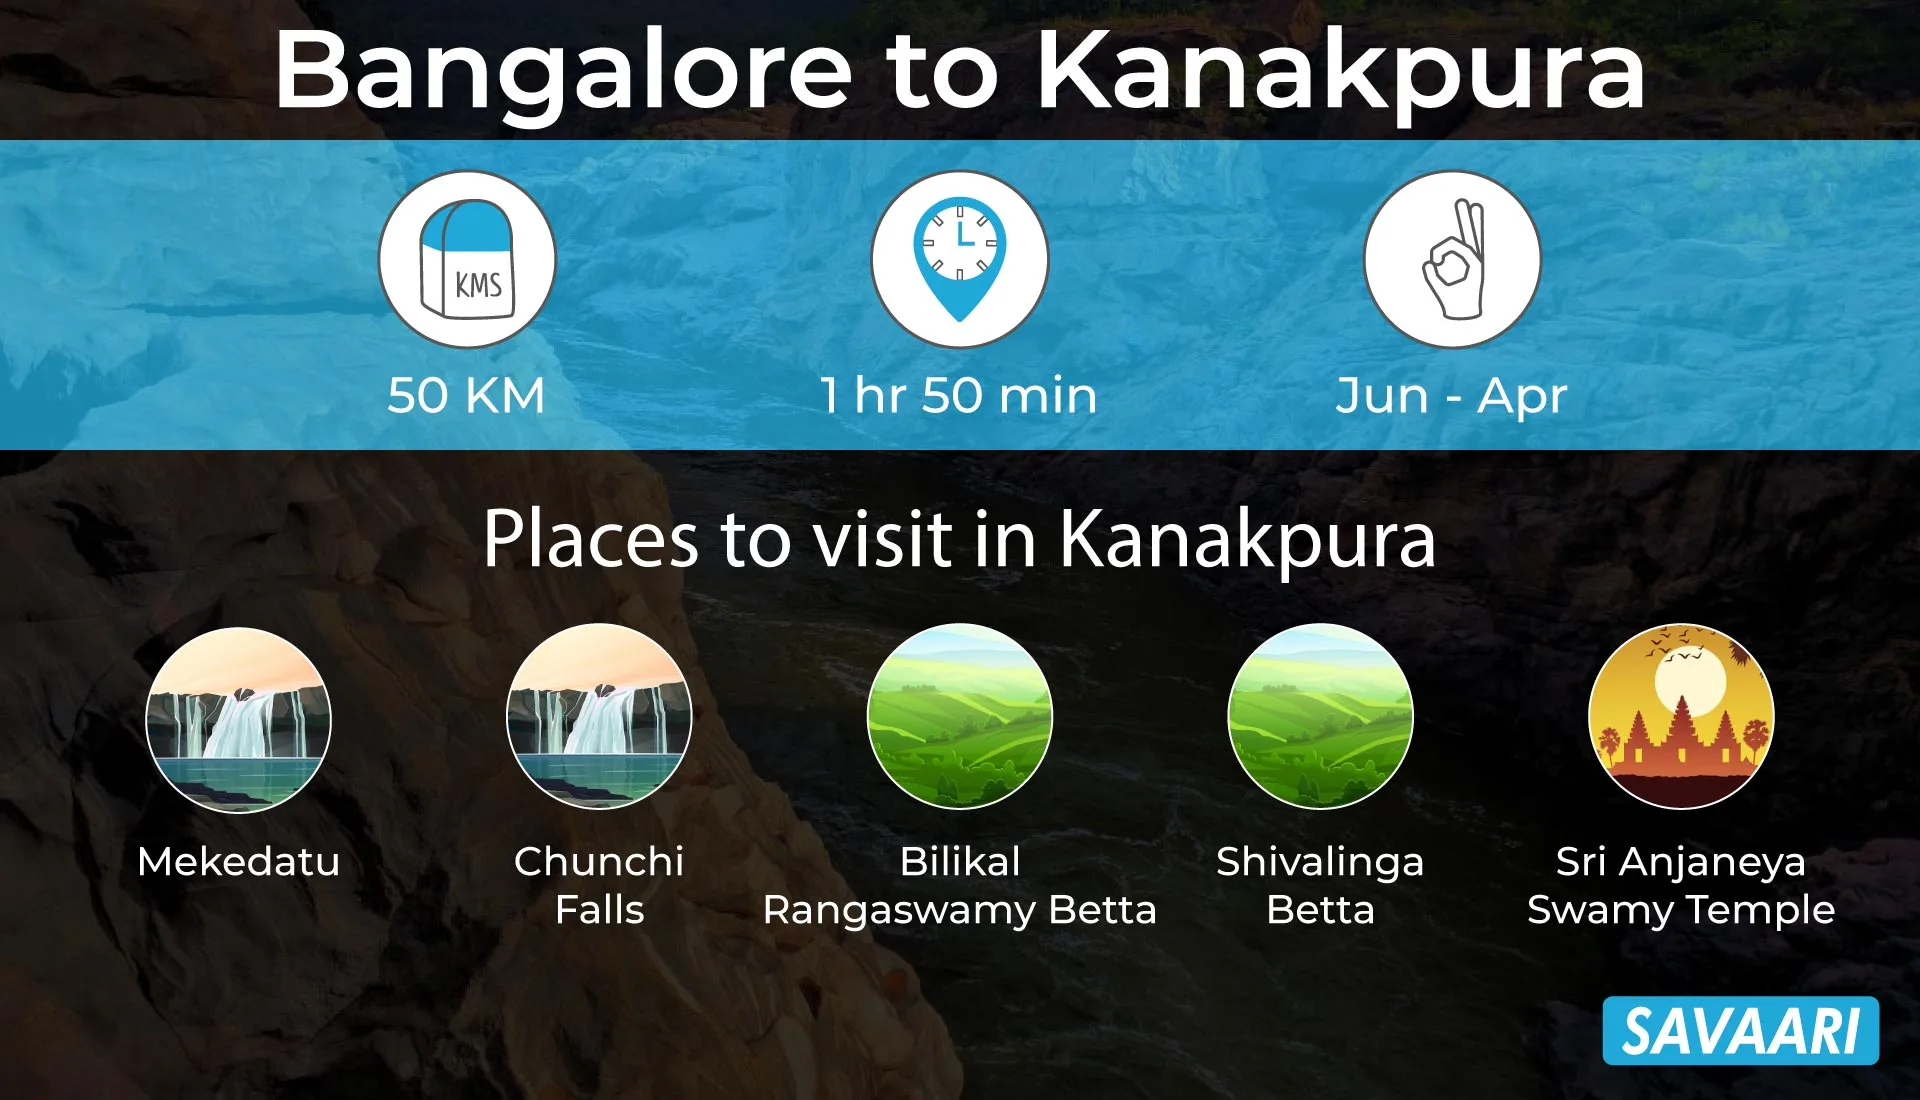 Kanakpura road trip nearby